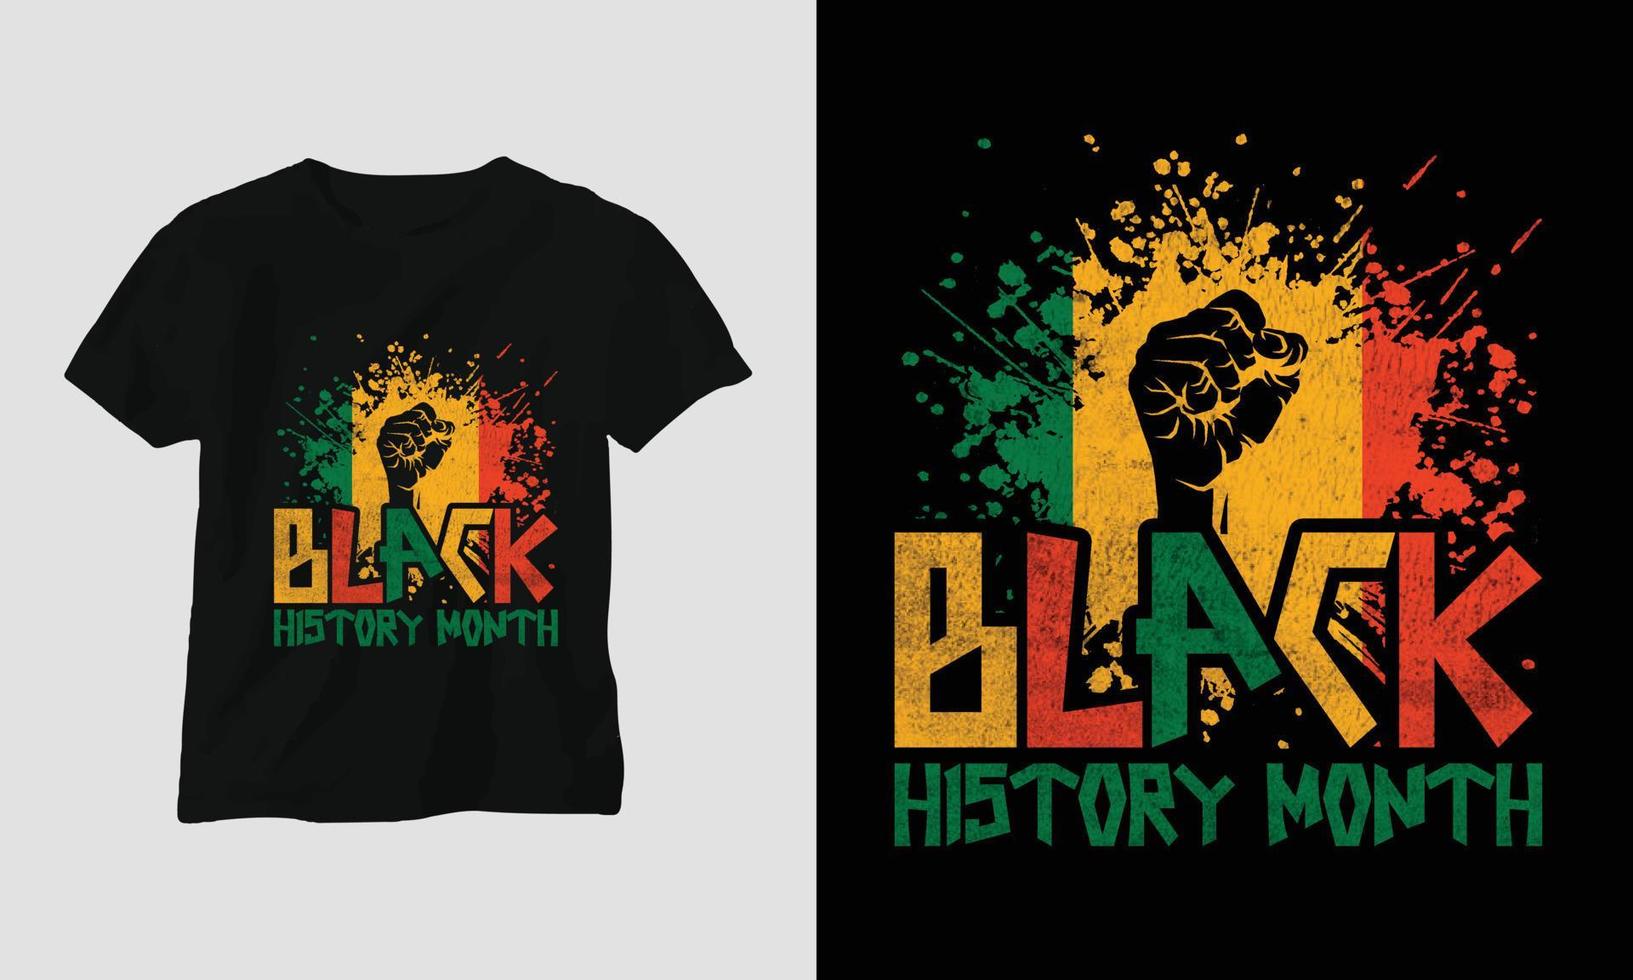 schwarzer Geschichtsmonat - schwarzes Geschichtsmonatst-shirt vektor